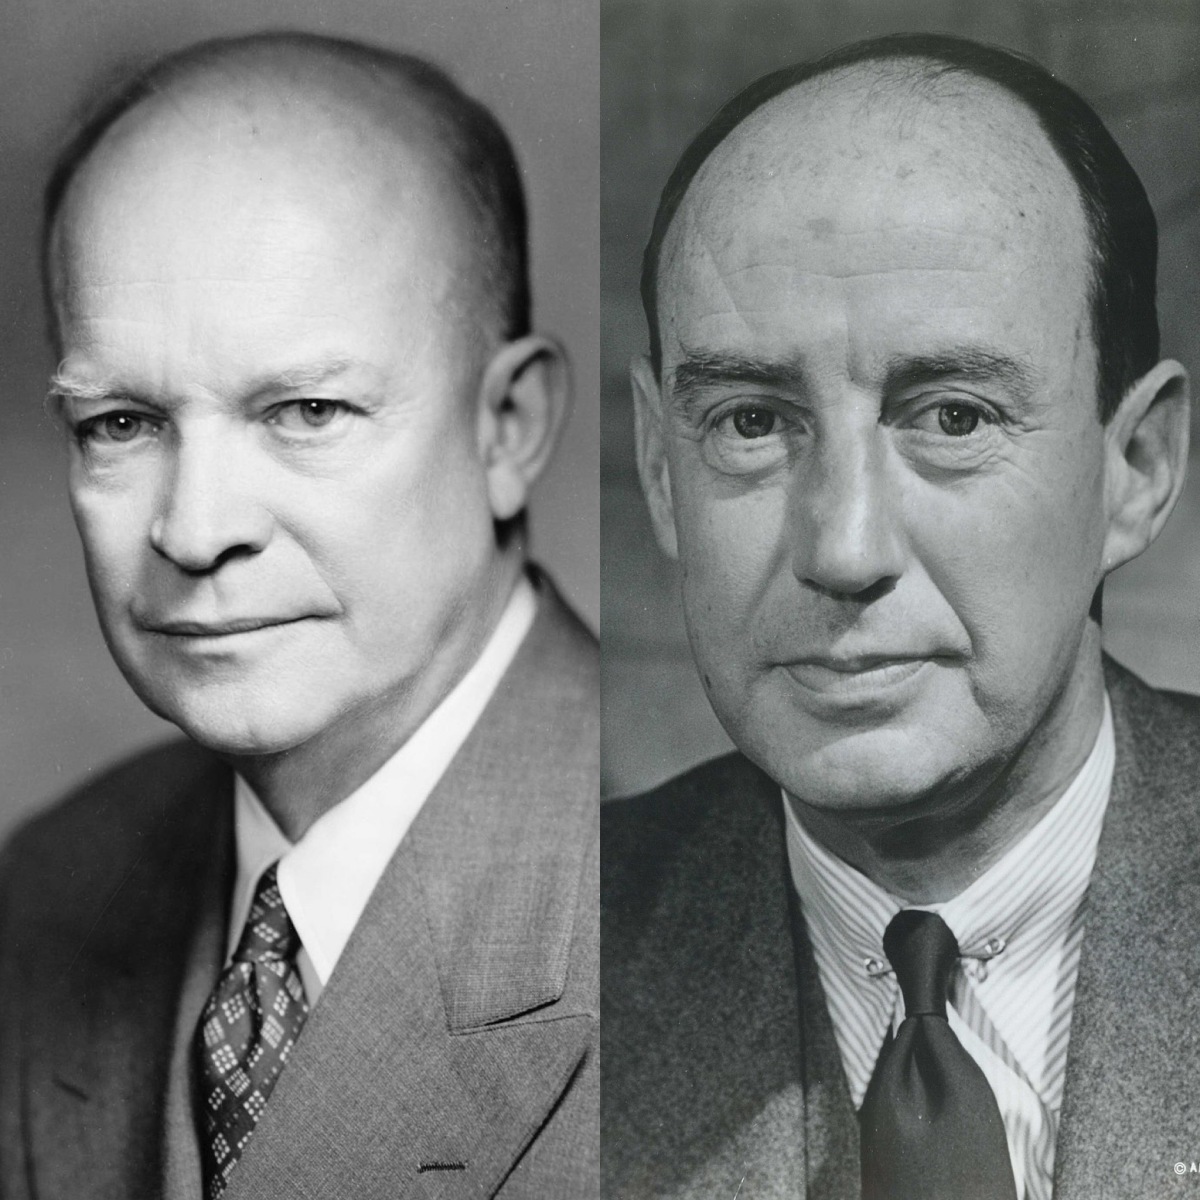 1956 – DWIGHT D. EISENHOWER VS ADLAI STEVENSON